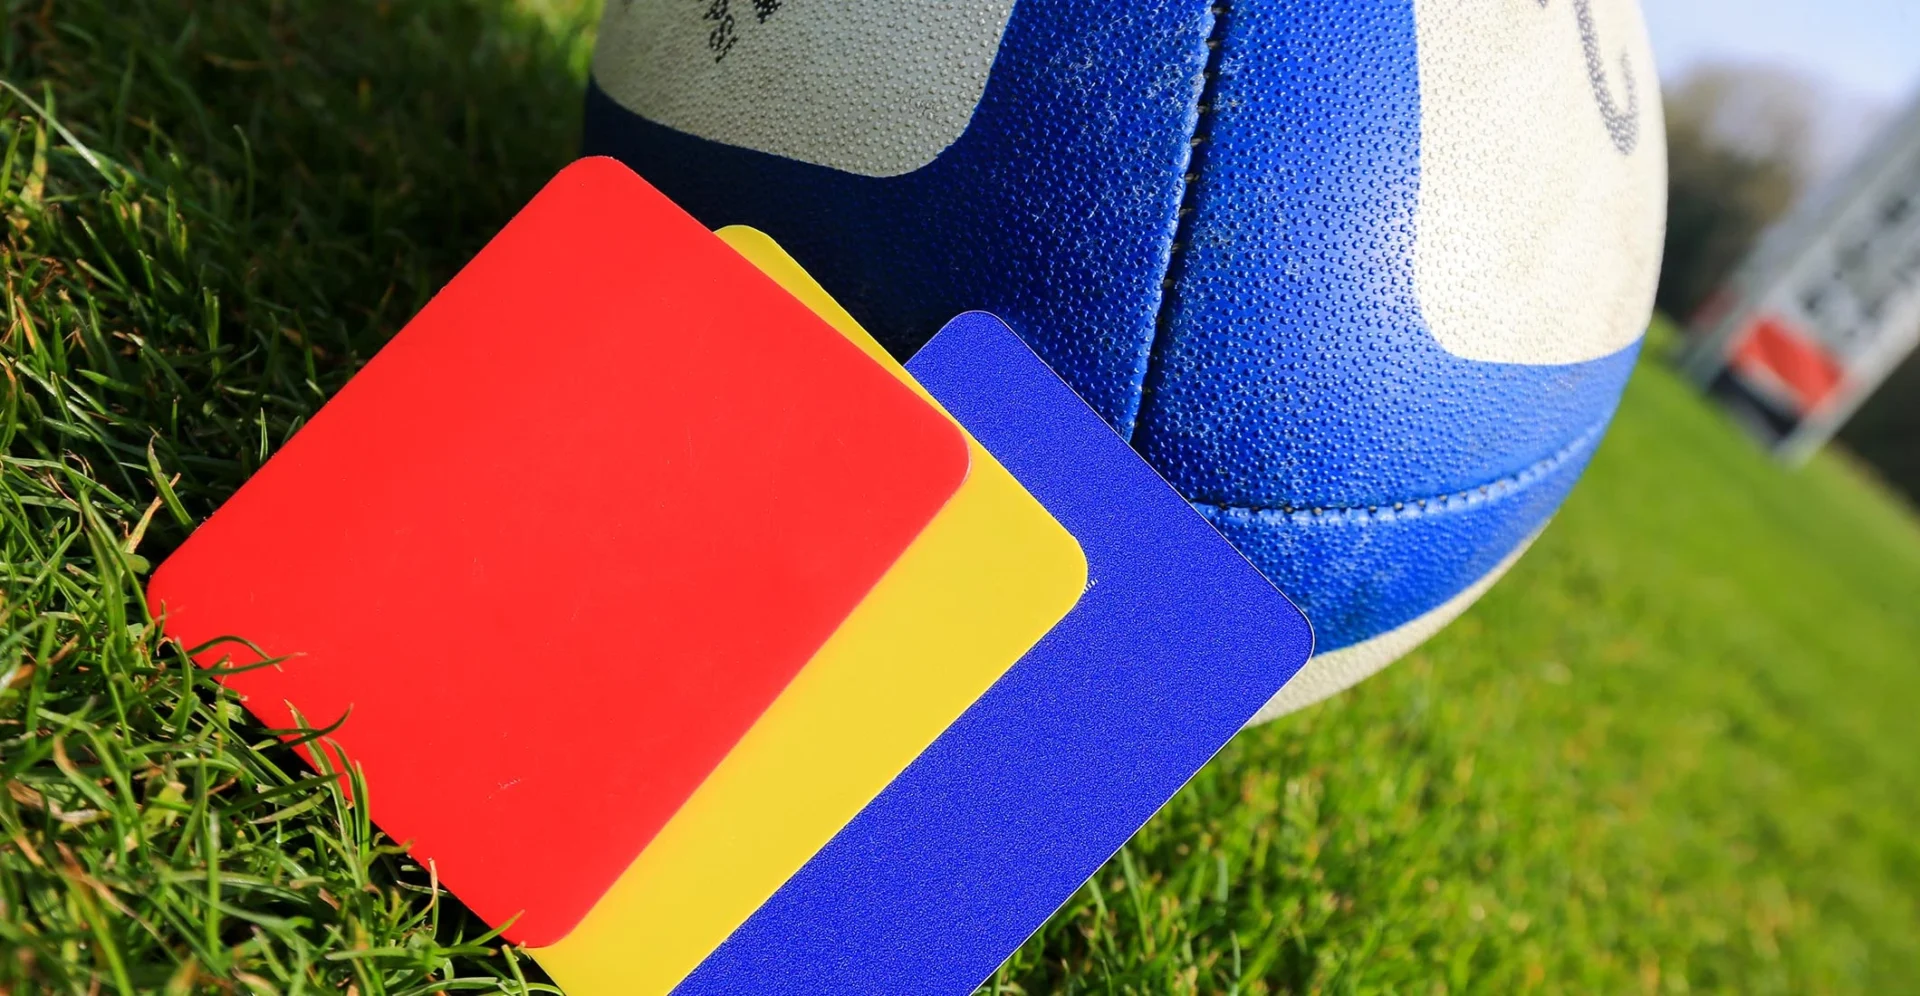 Polémique autour du carton bleu : La FIFA apporte des éclaircissements